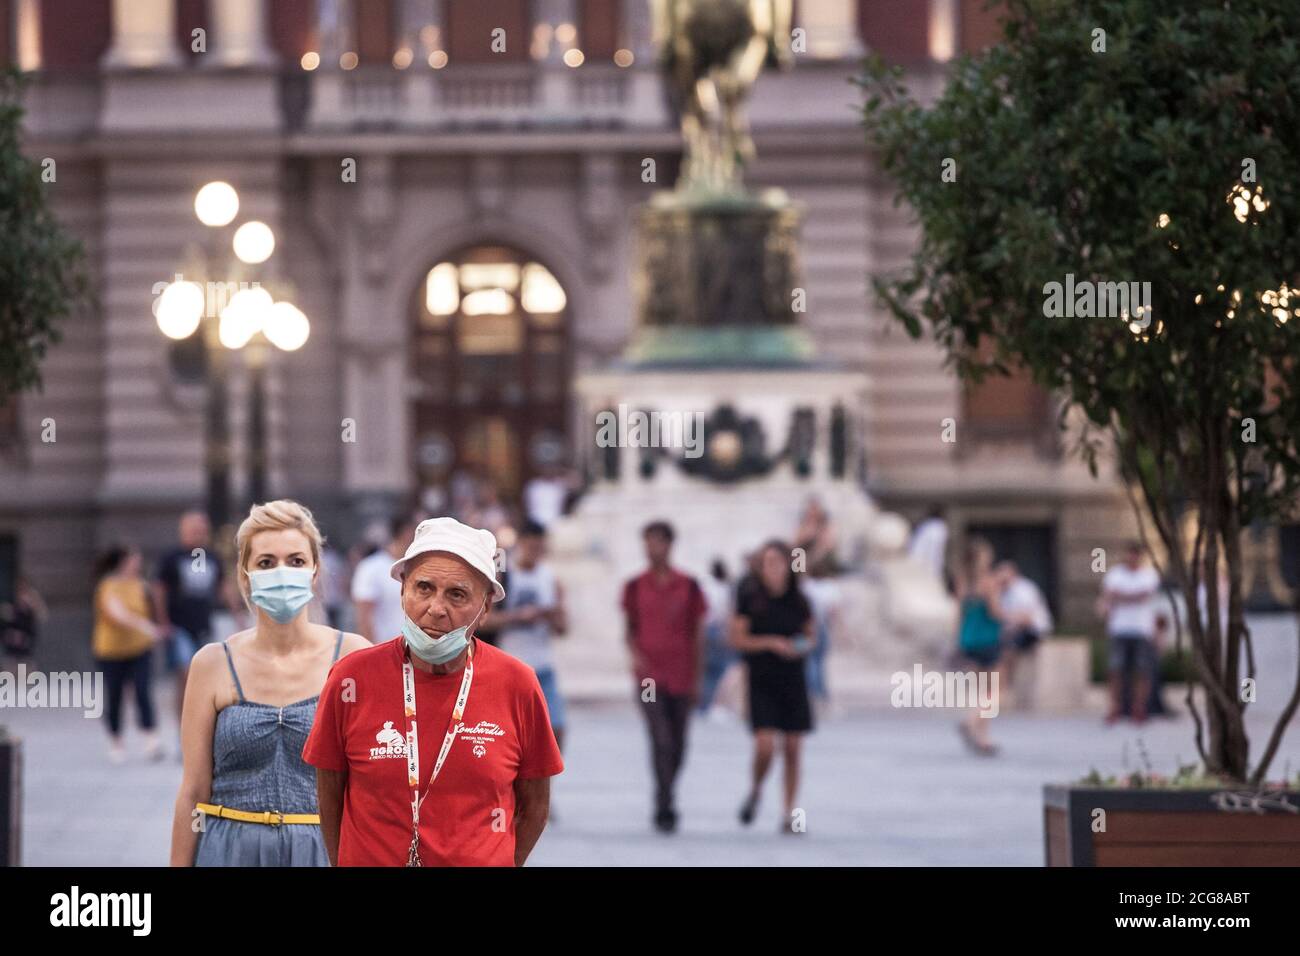 BELGRAD, SERBIEN - 26. AUGUST 2020: Alter älterer Mann trägt eine Atemmaske unter dem Kinn, während ein junges Mädchen auch eine Maske trägt, richtig, duri Stockfoto